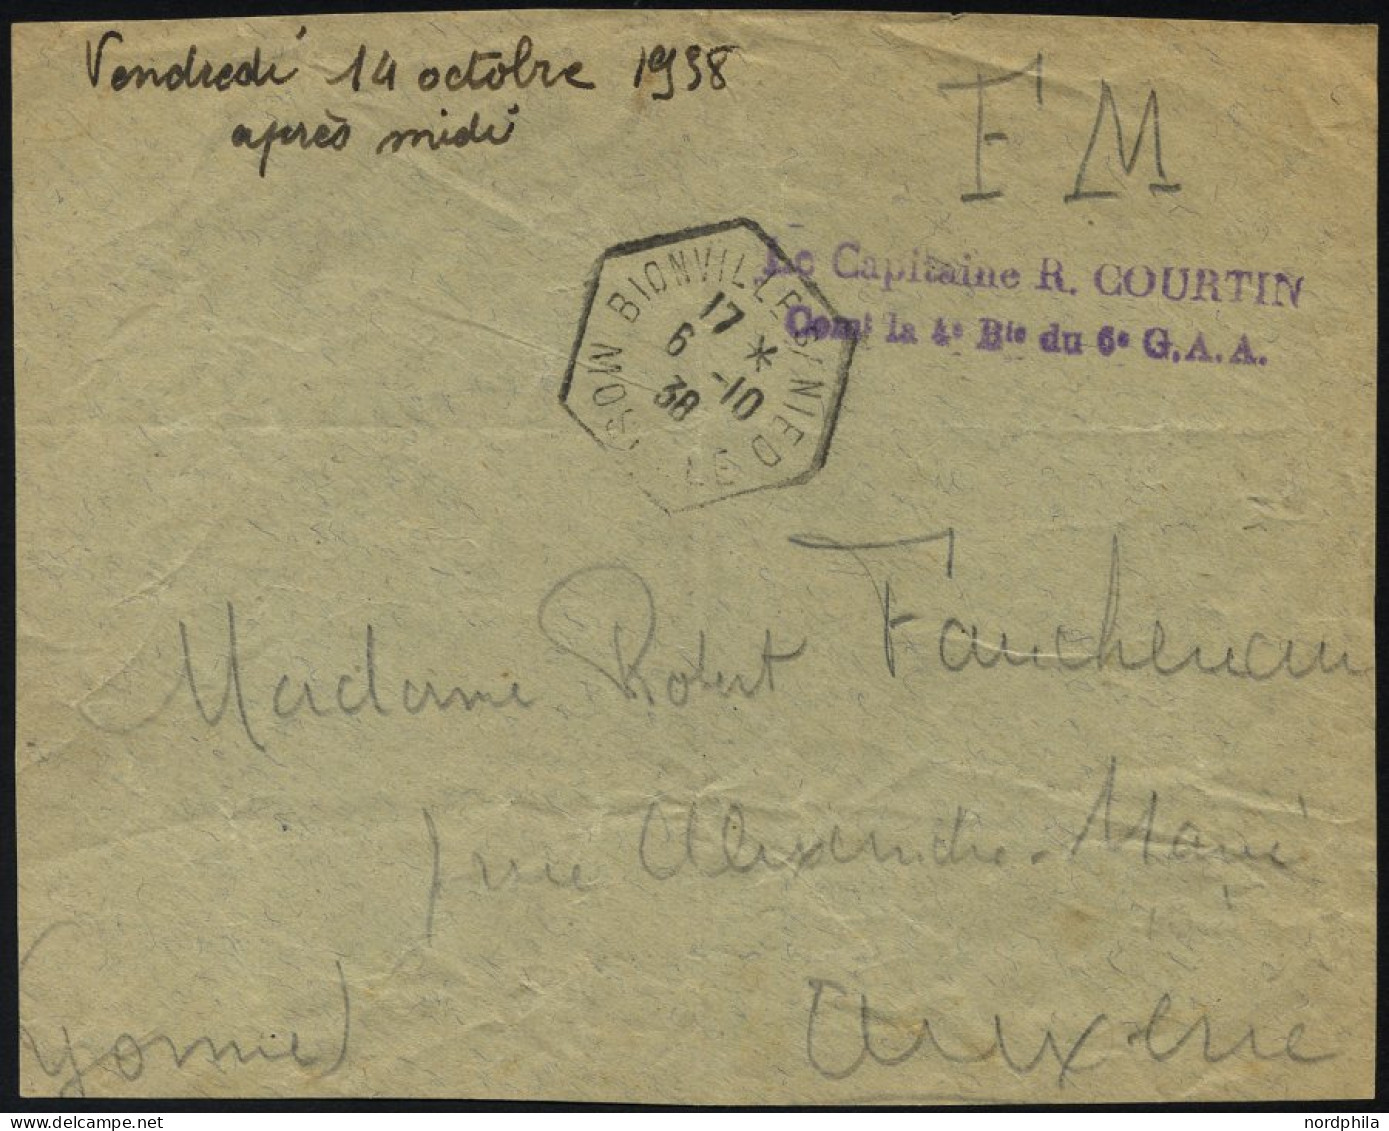 FRANKREICH FELDPOST 1938, Violetter Absenderstempel Le Capitaine R. Courtin, Con La 4 D Du 6 G.A.A. Auf Briefvorderseite - 2. Weltkrieg 1939-1945